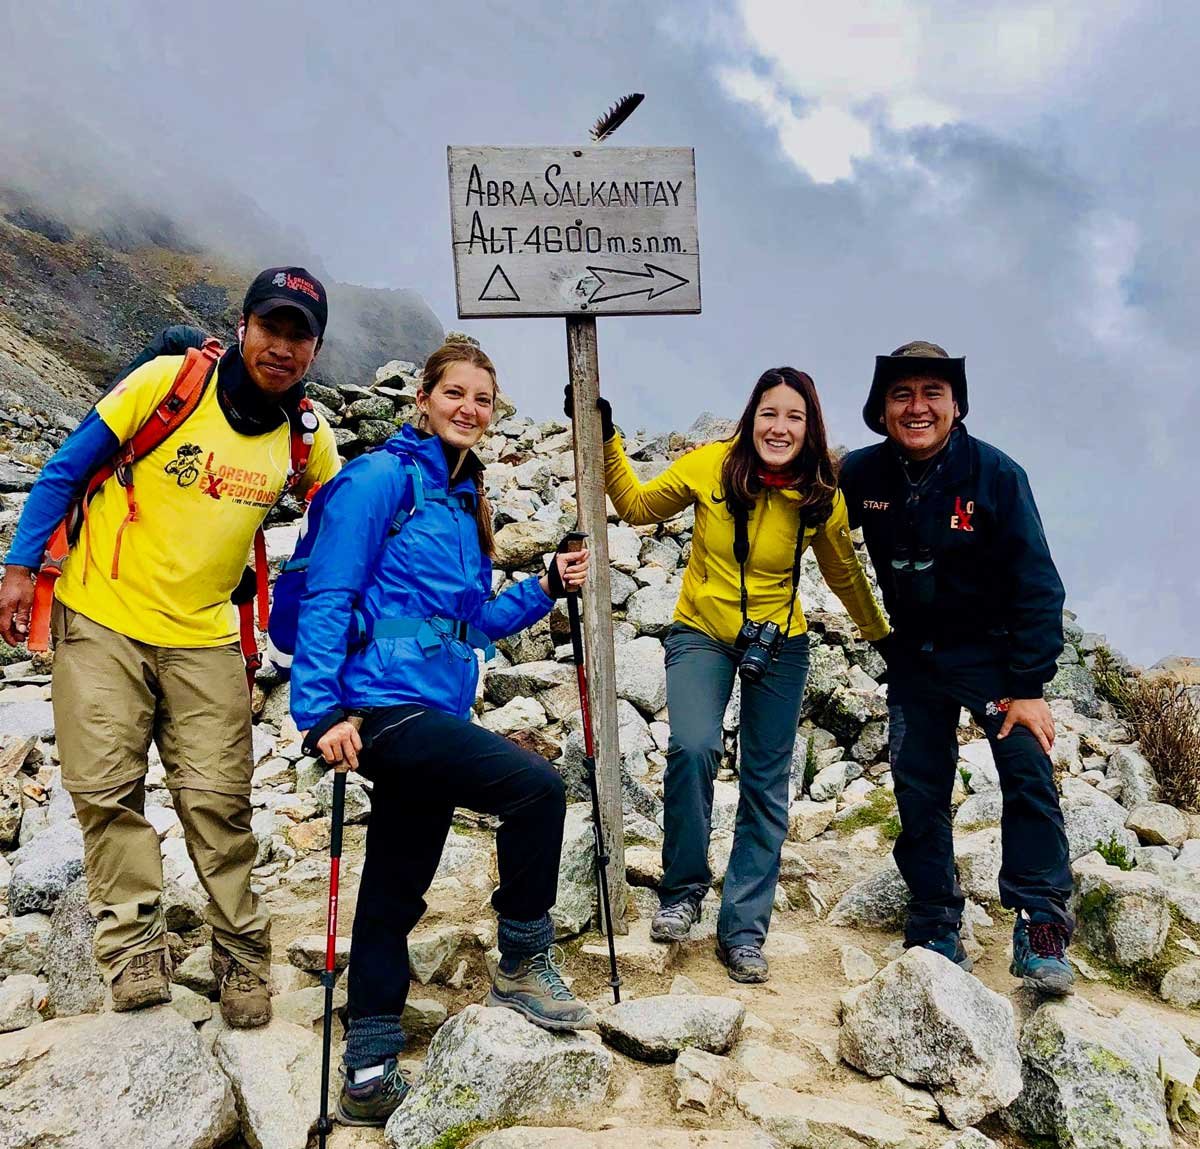 Trilha Salkantay para Machu Picchu 5 dias